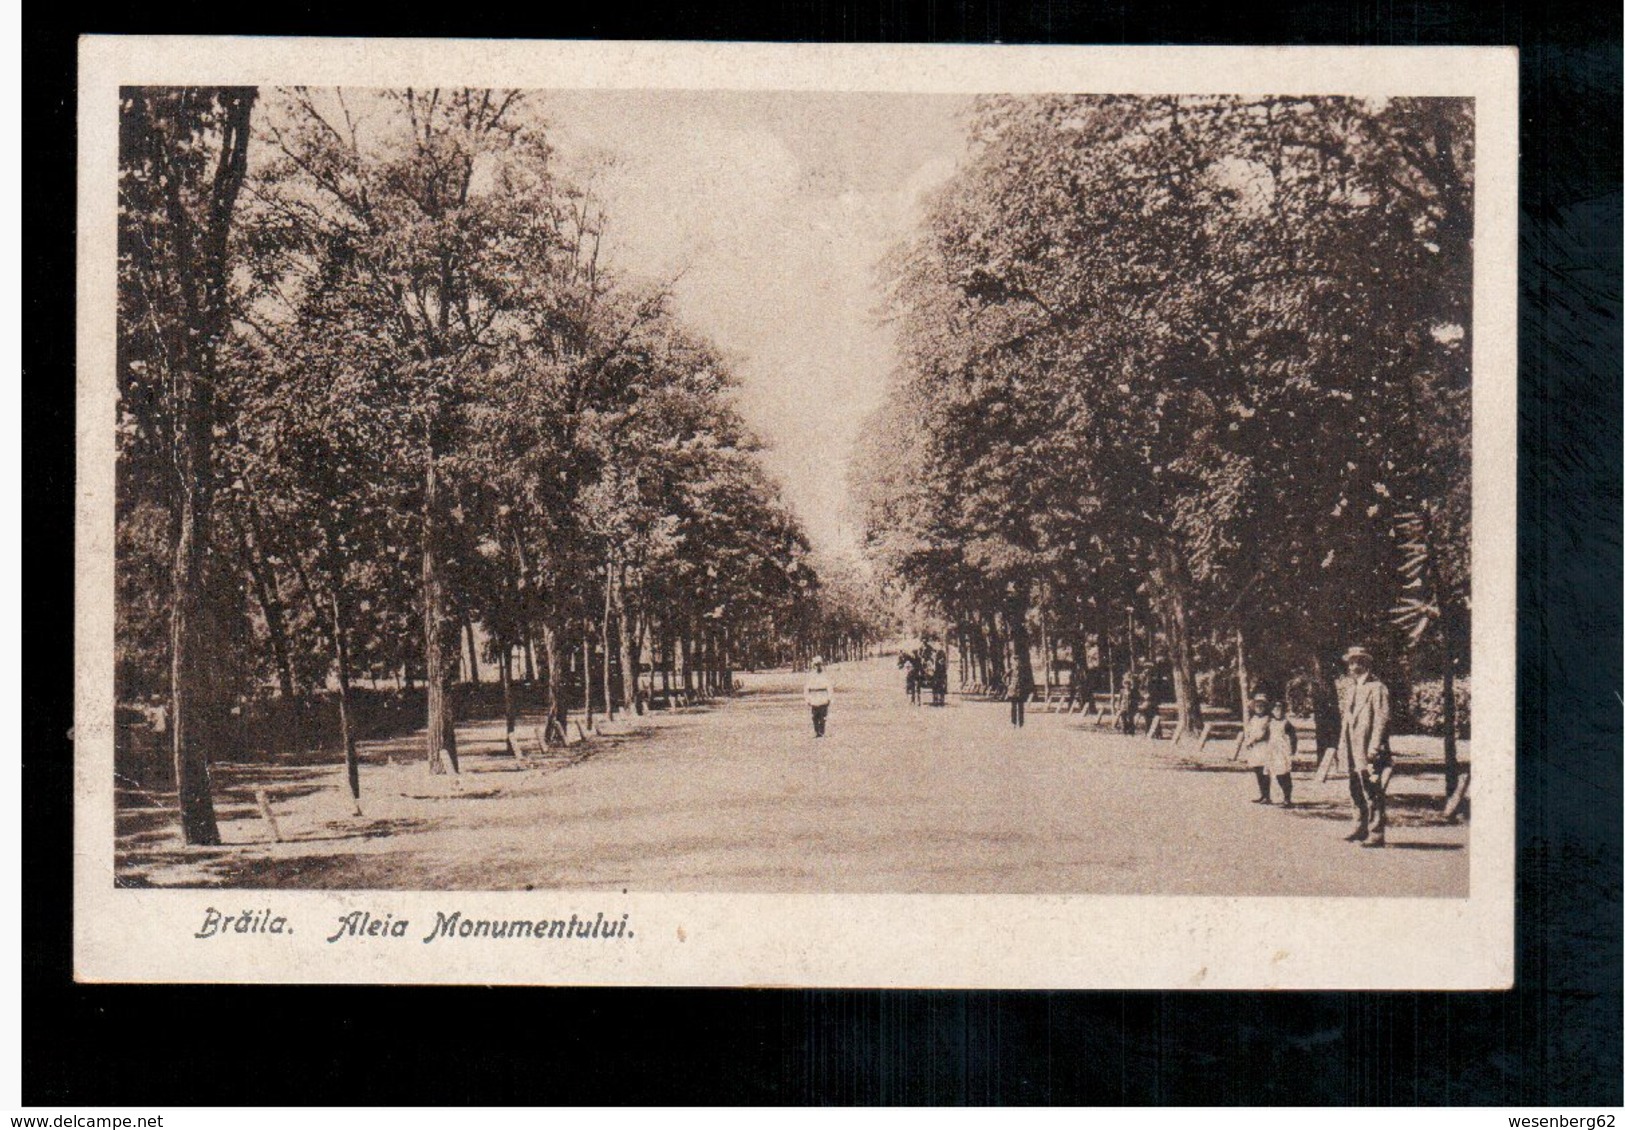 ROMANIA Braila - Aleia Monumentului 1919 Old Postcard - Romania